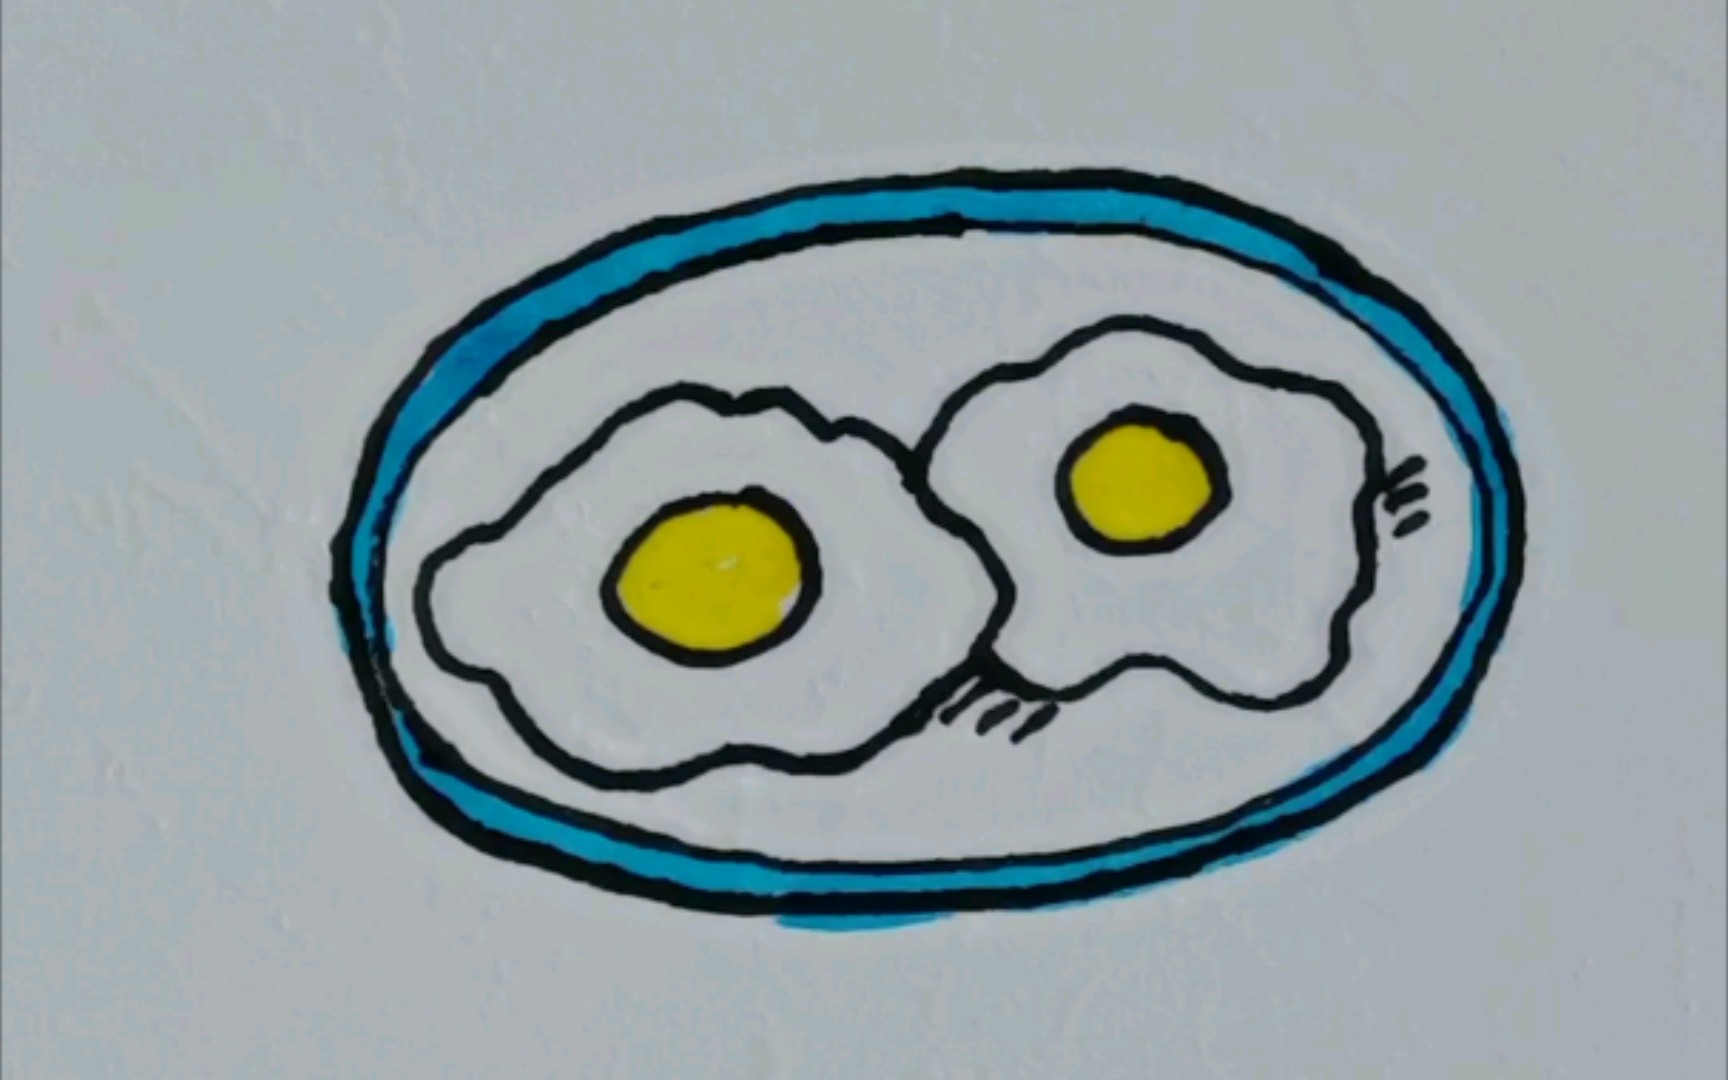 煎蛋怎么画简单图片